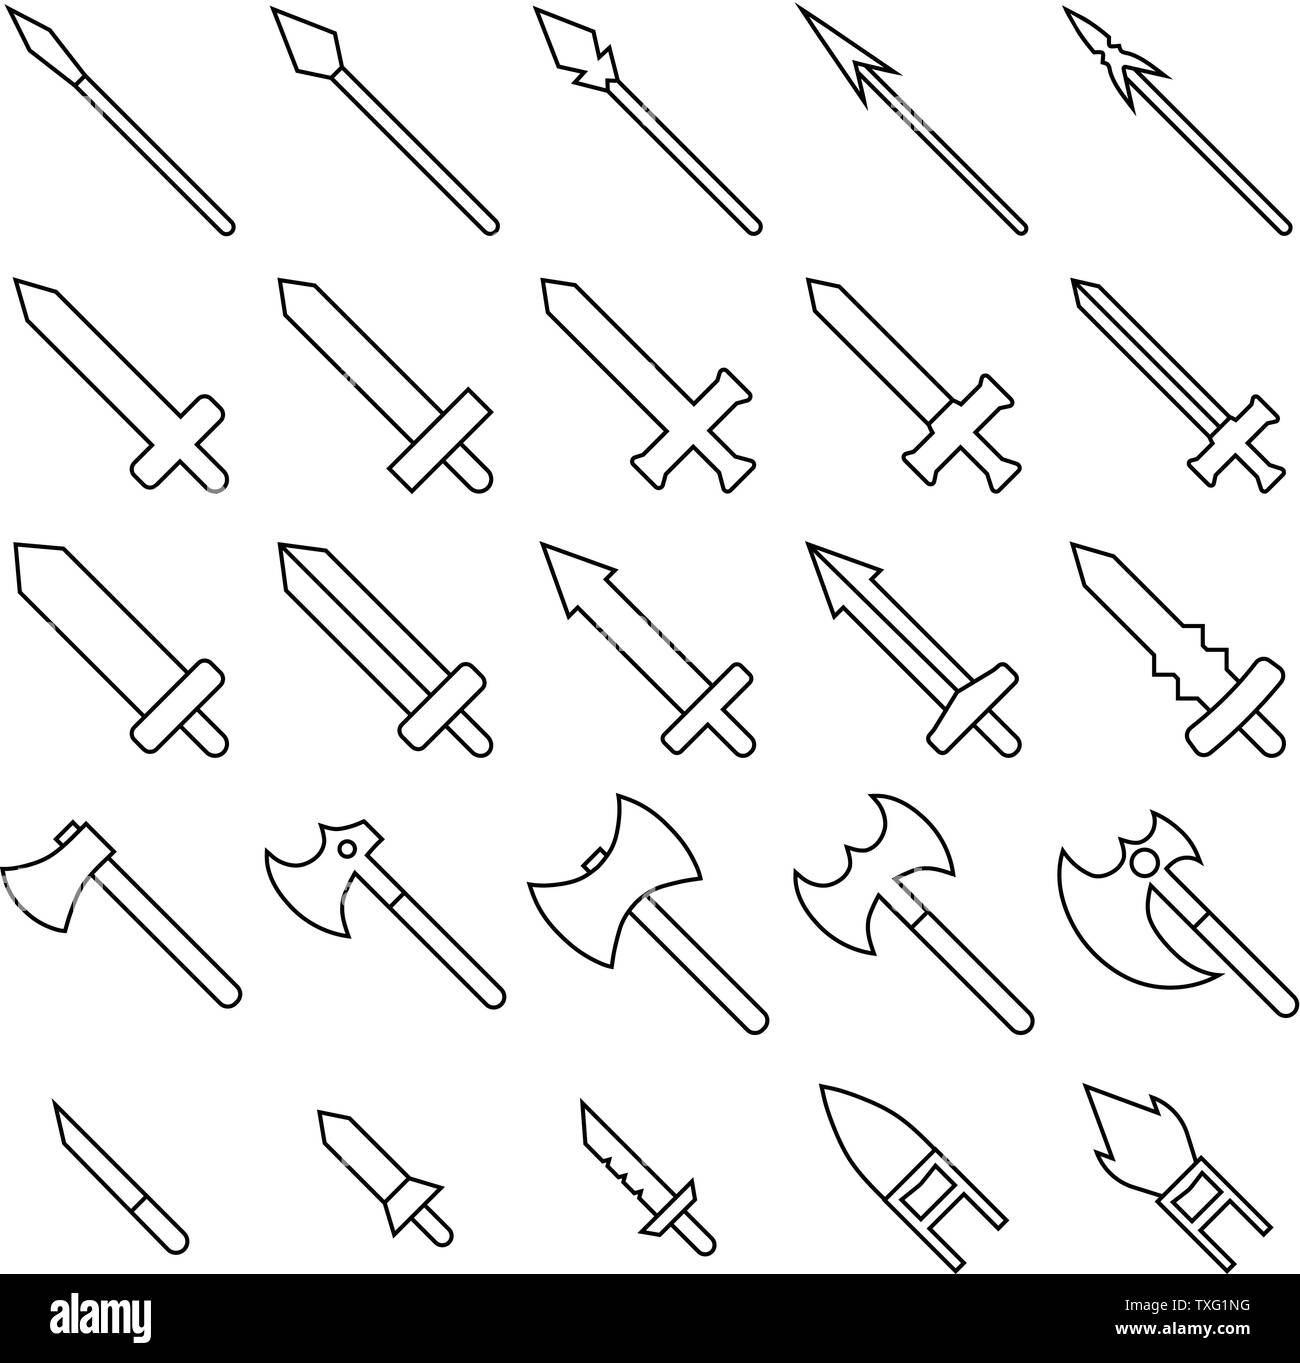 Satz mit 25 Umrisse Waffe Symbole auf weißem Hintergrund. Mittelalterliche Waffe Silhouette. Vector Illustration für ihr Design, Game, Karte, Web. Stock Vektor